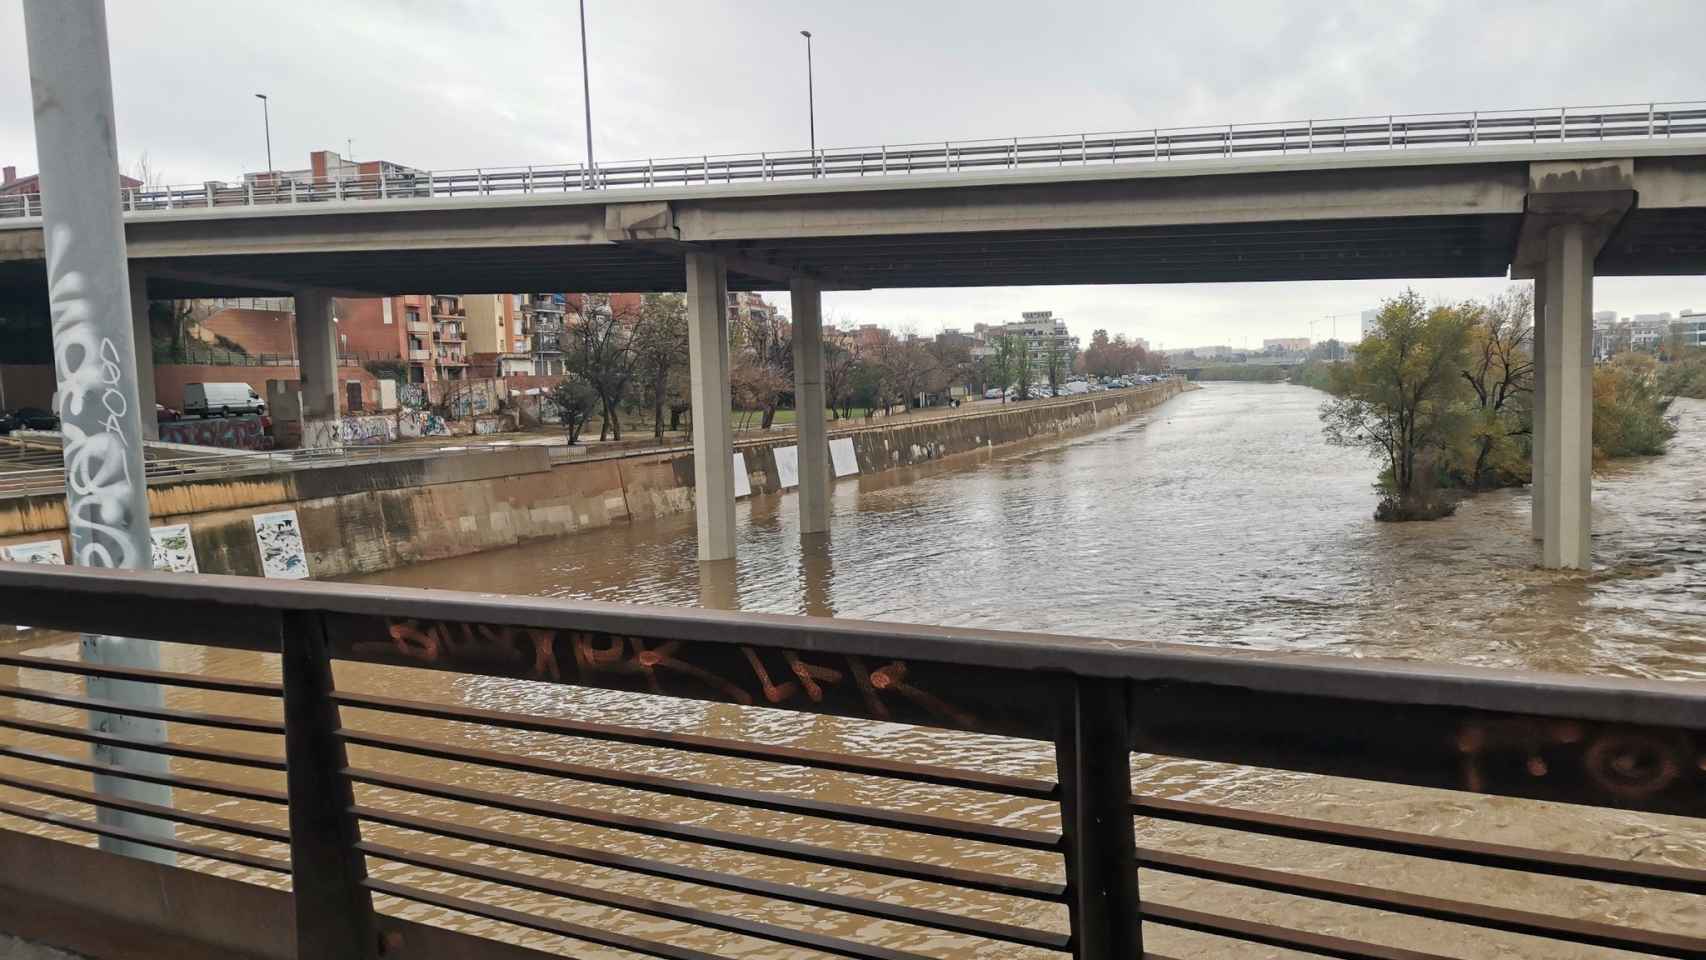 El río Besòs a punto de desbordarse en Santa Coloma de Gramenet por el episodio de lluvias torrenciales / TWITTER - @SannyMoonligh